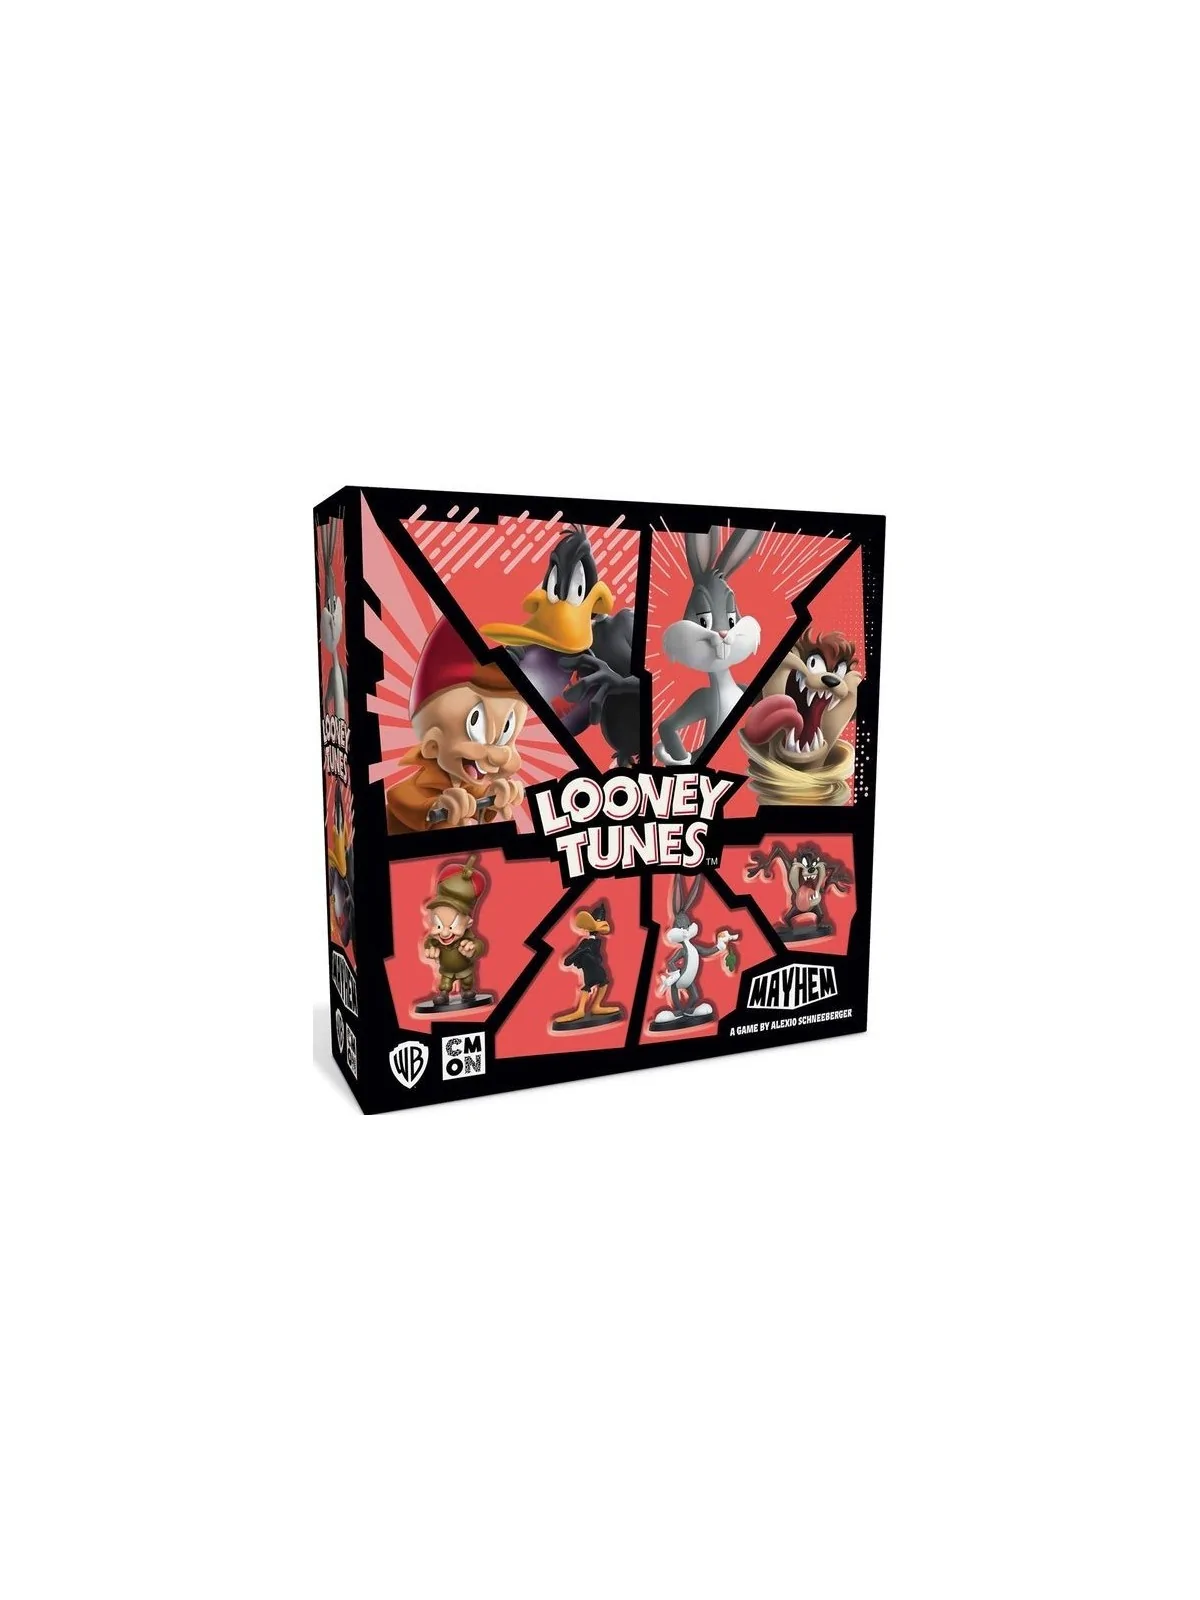 Comprar Looney Tunes Mayhem barato al mejor precio 53,99 € de CMON